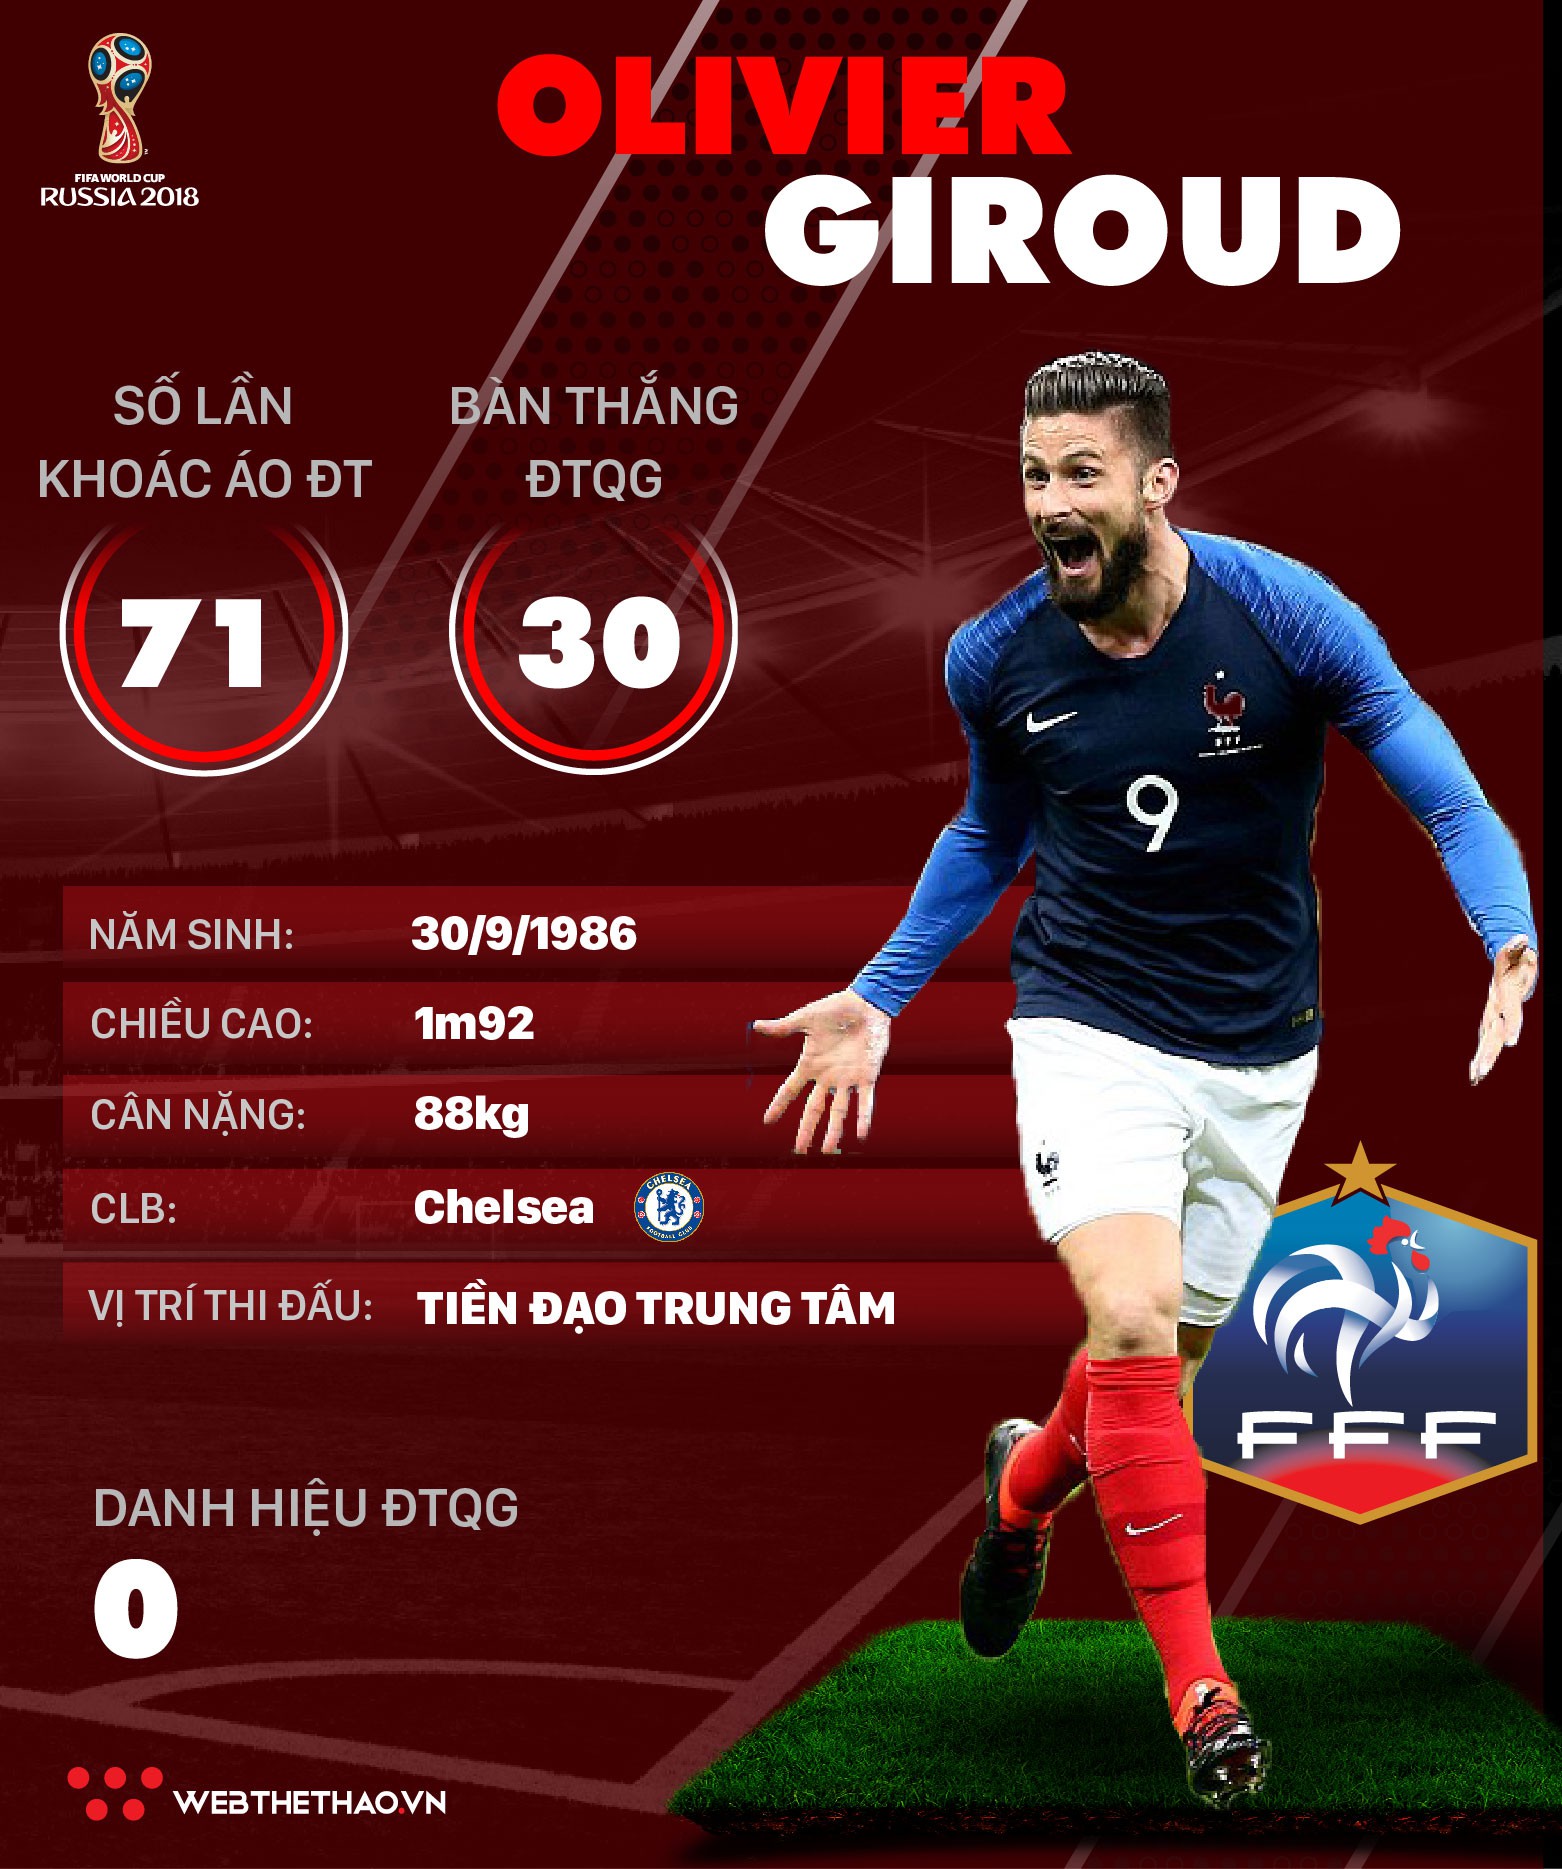 Thông tin cầu thủ Olivier Giroud của ĐT Pháp dự World Cup 2018 - Ảnh 1.